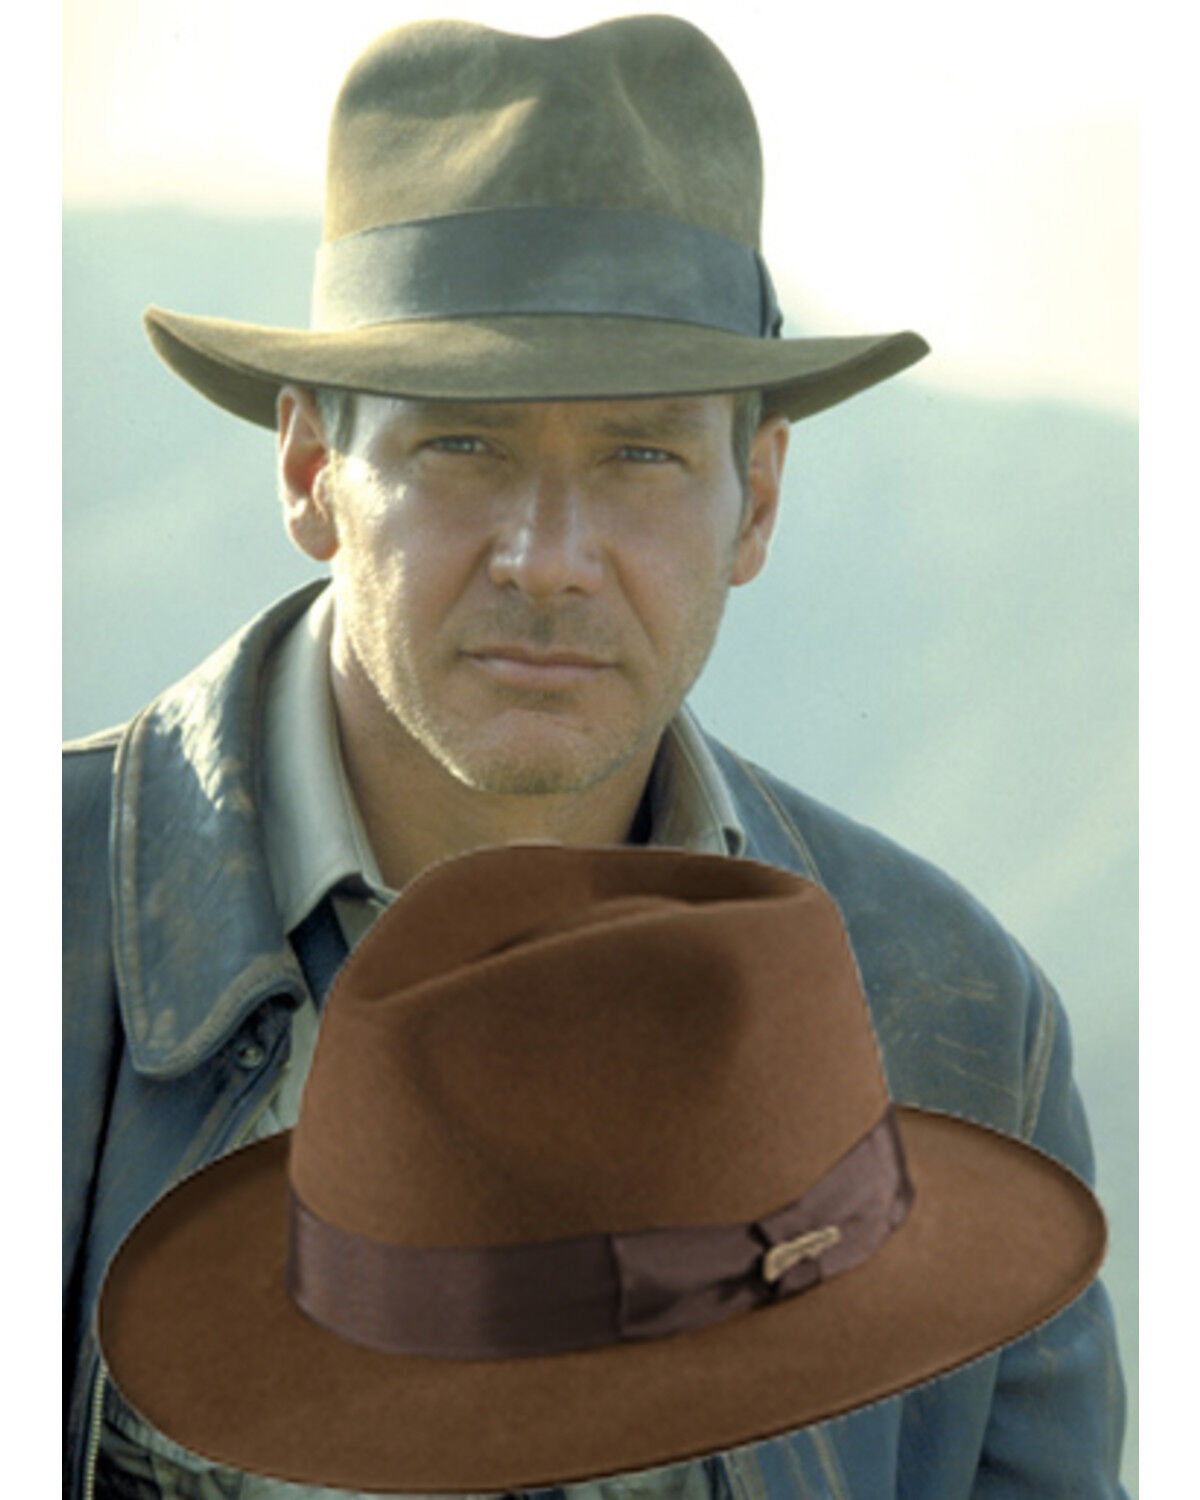 Indiana Jones Hats \u0026 Fedoras - Sheplers